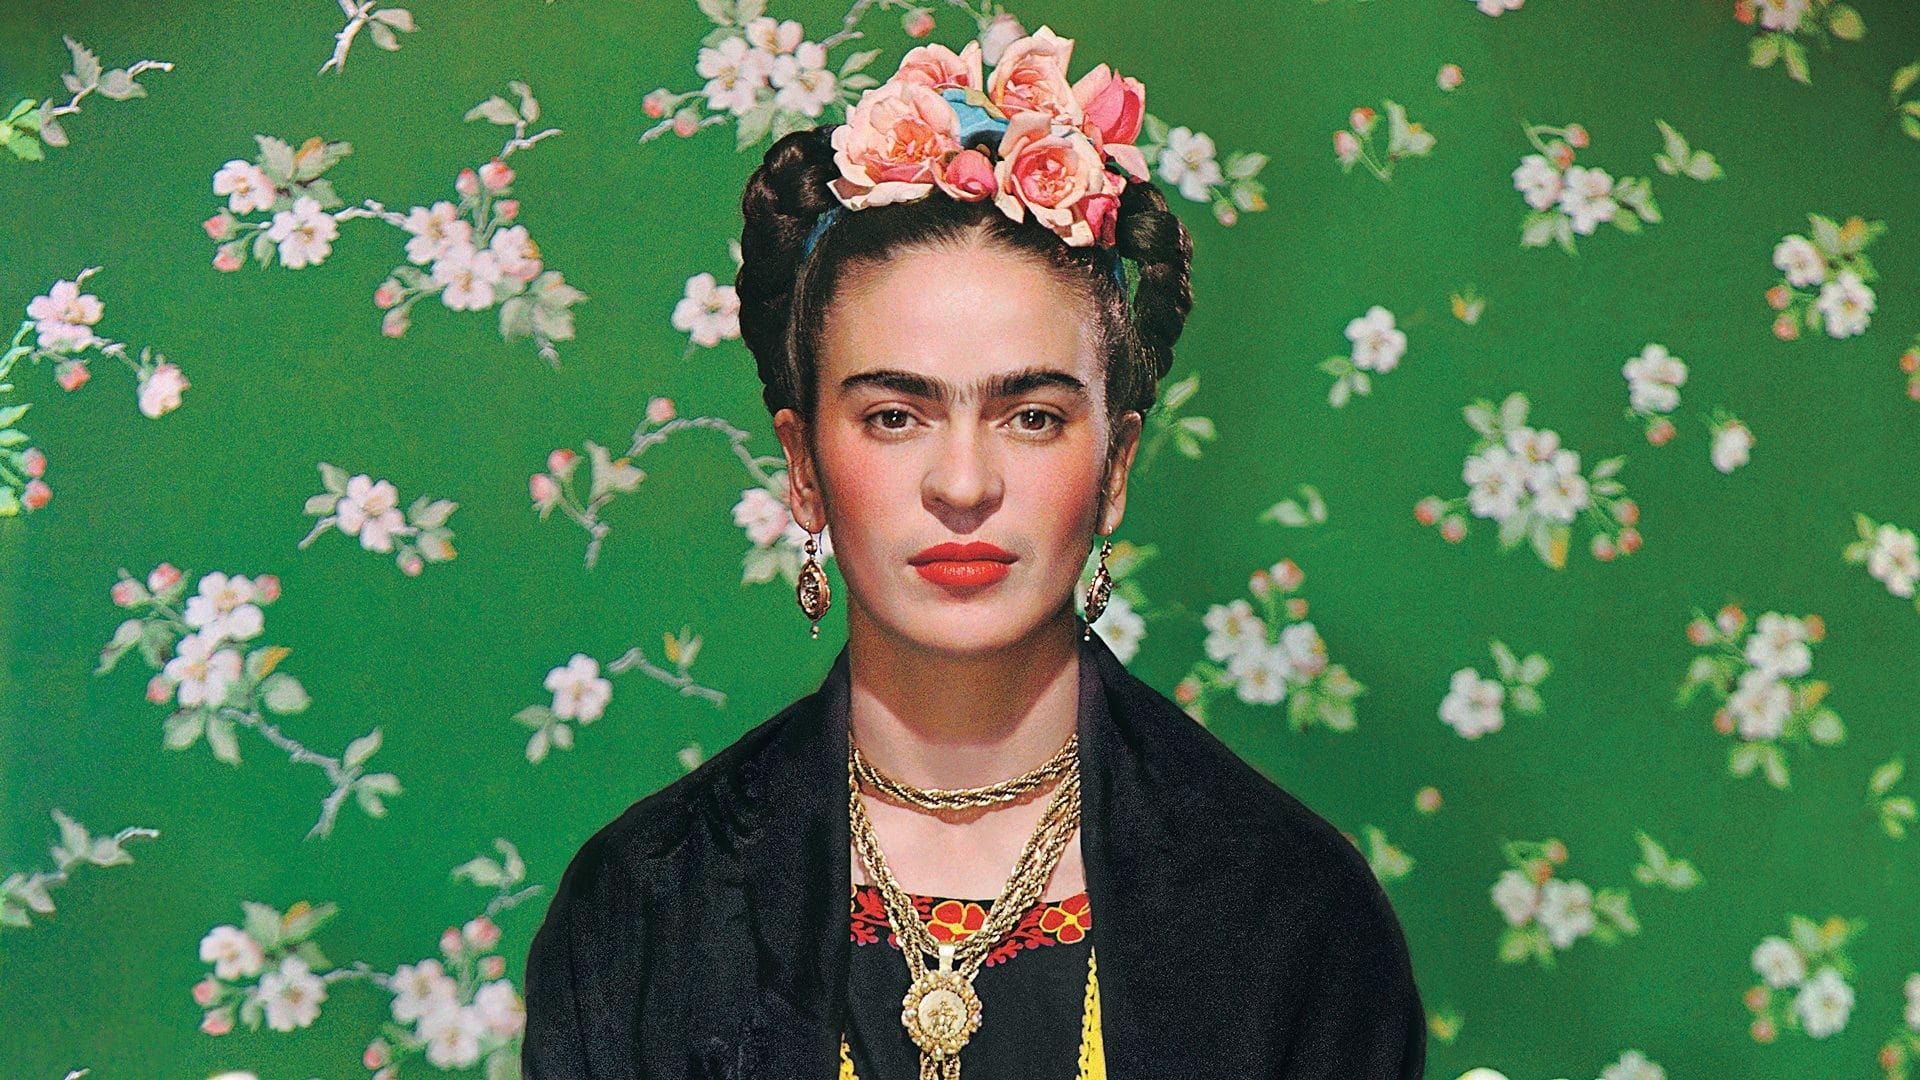 Becoming Frida Kahlo background